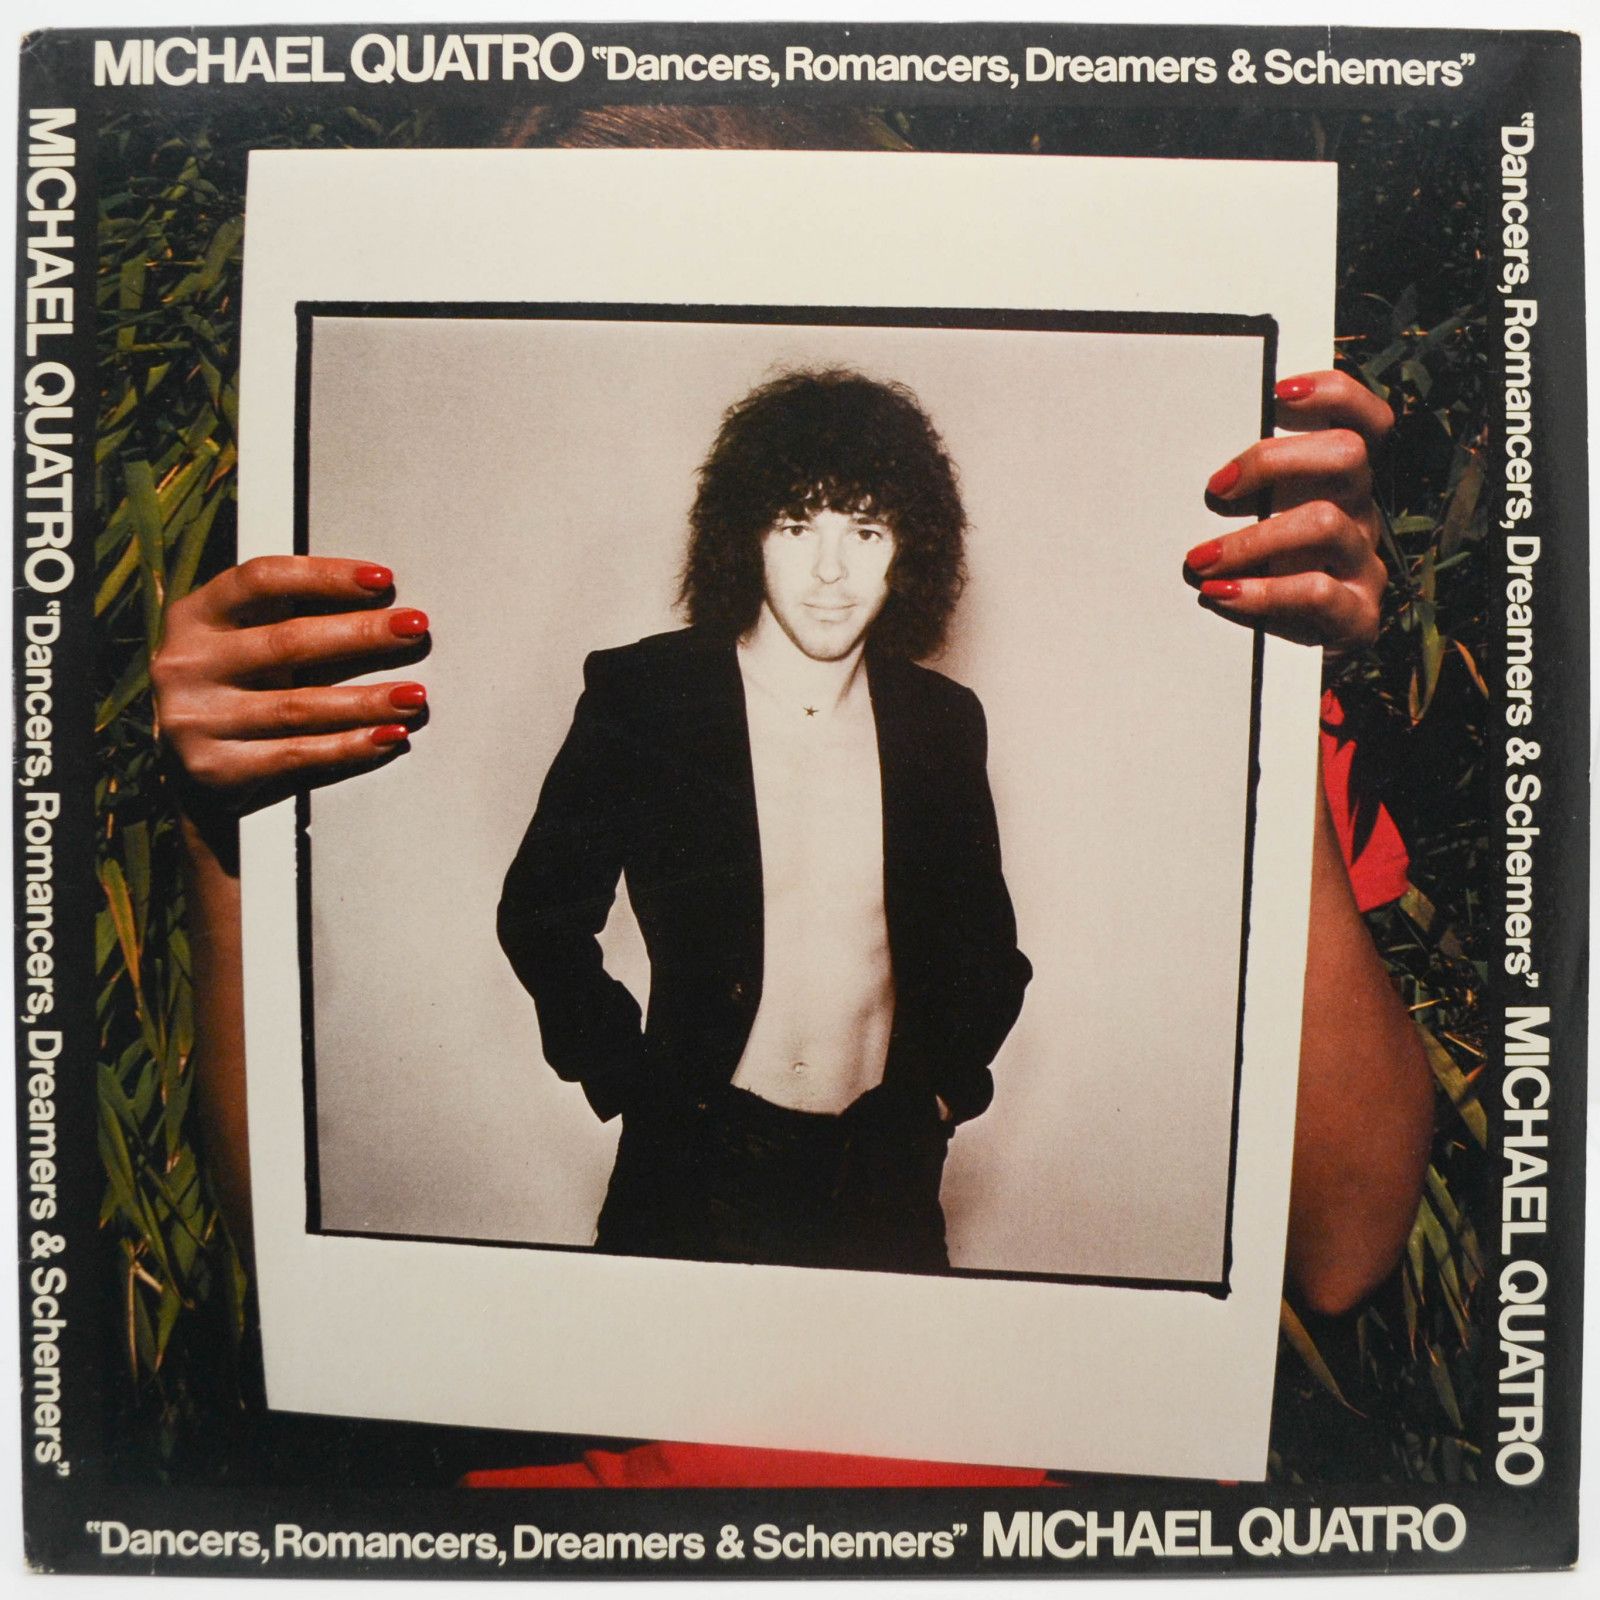 Michael Quatro — Dancers, Romancers, Dreamers & Schemers, 1976